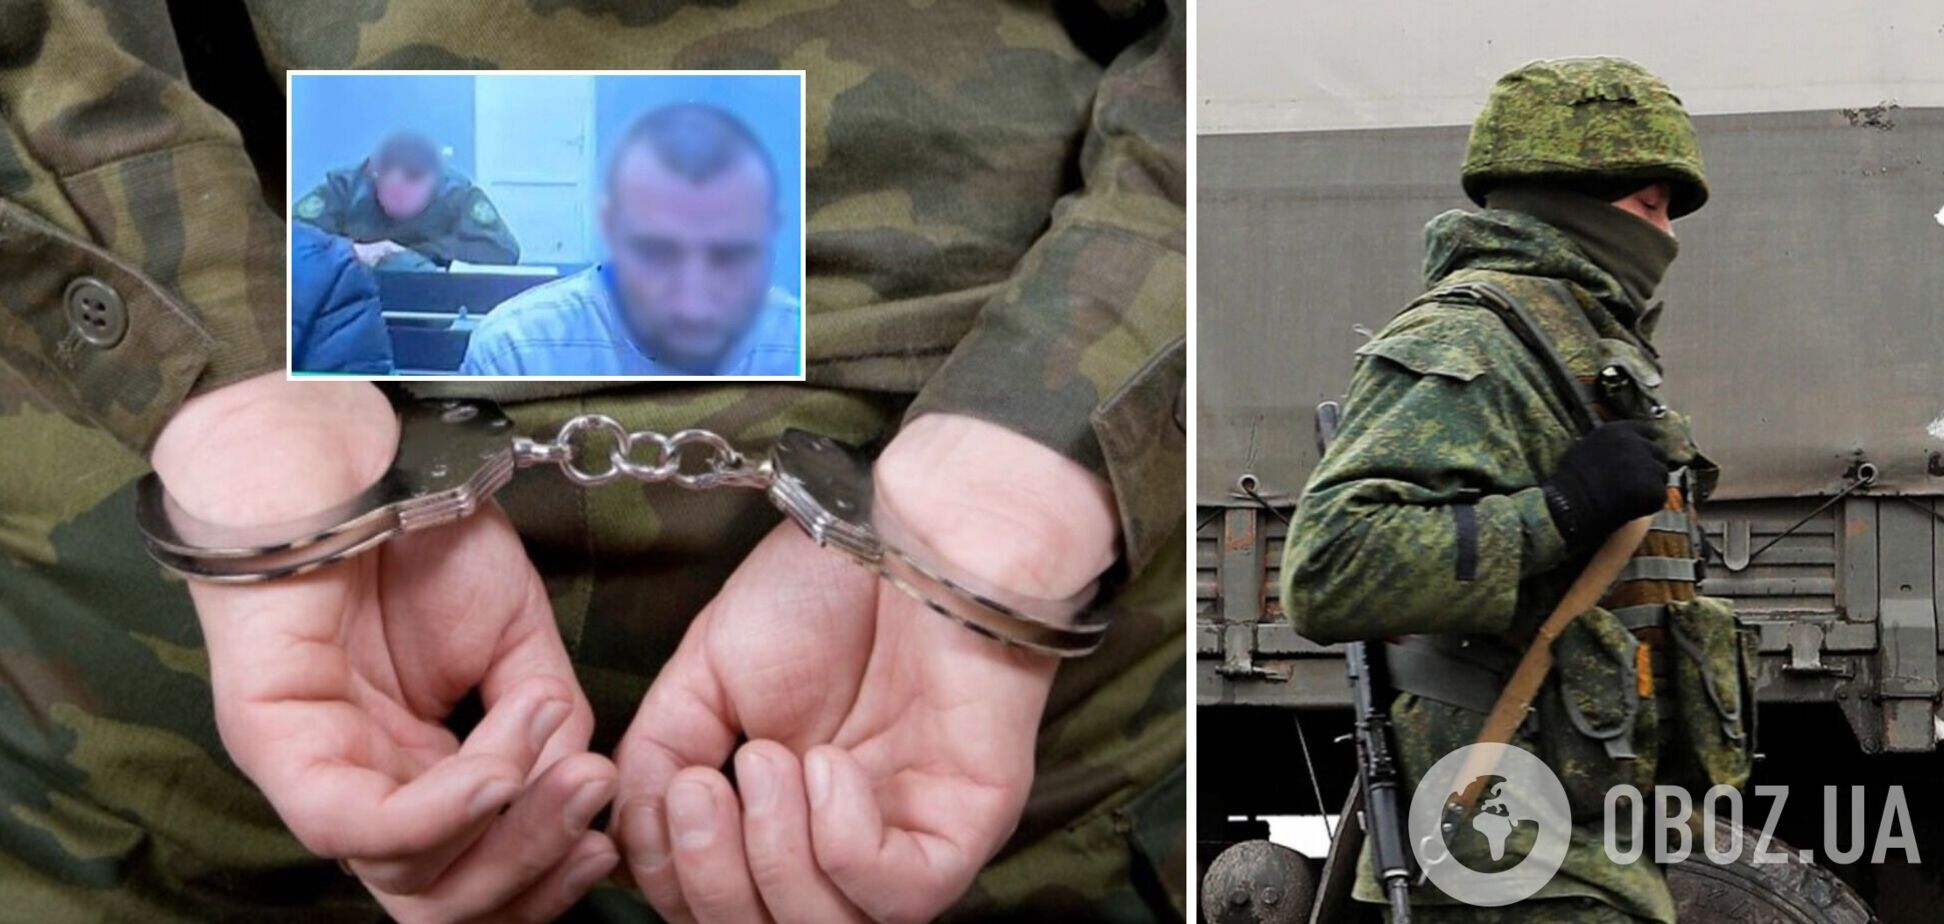 Предал в 2014 году и вернулся убивать украинцев в 2022-ом: суд отправил за решетку на 14 лет экс-военнослужащего ВСУ. Фото